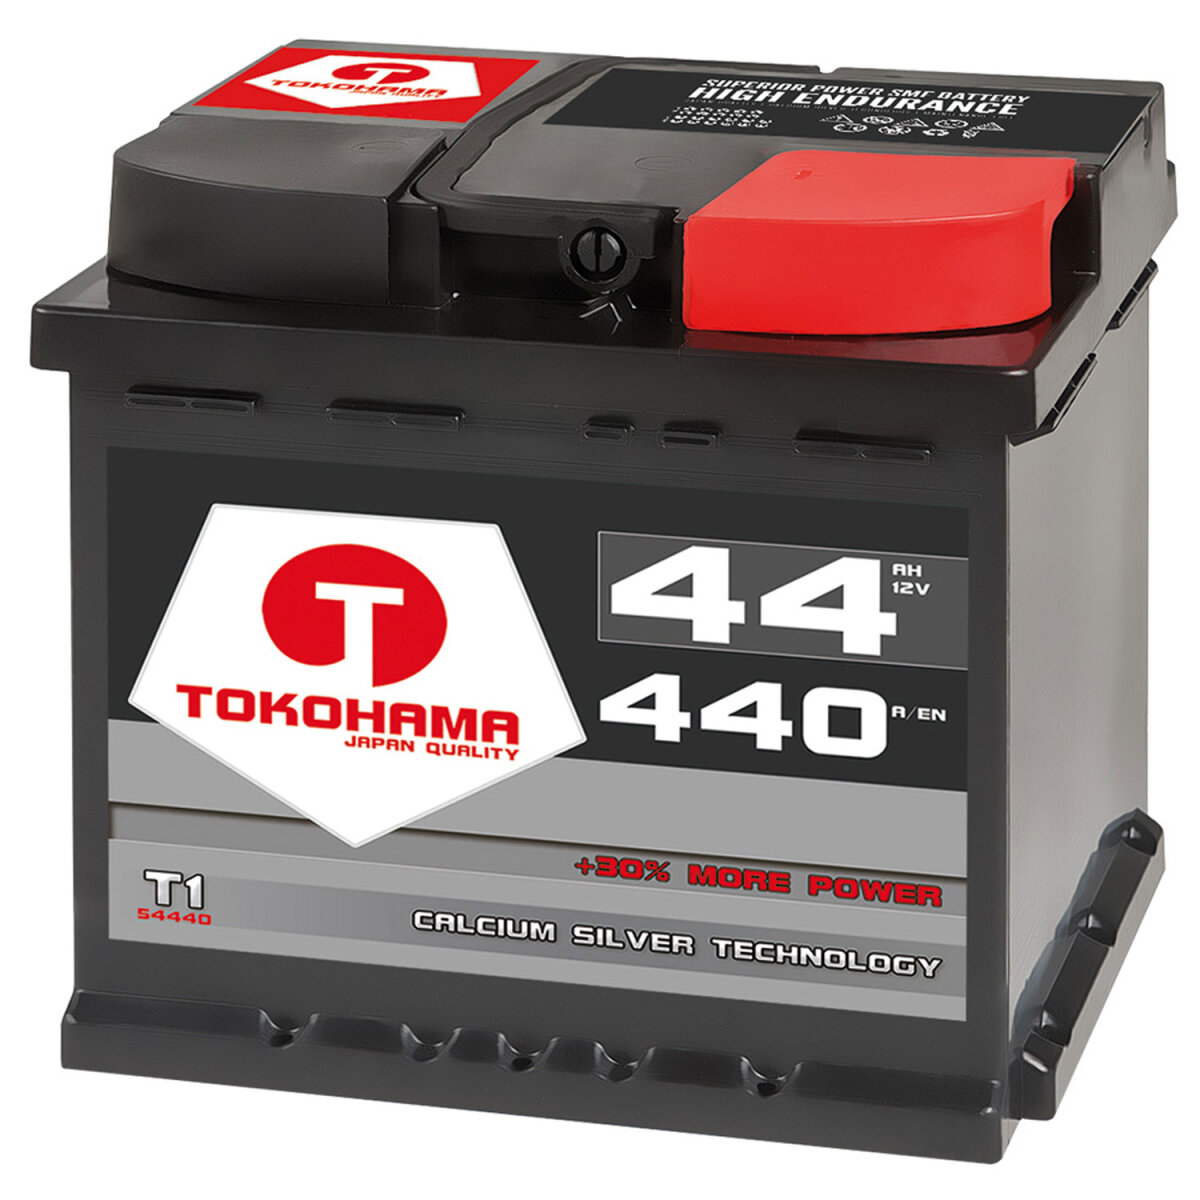 Tokohama Autobatterie 44AH 12V, 43,90 €